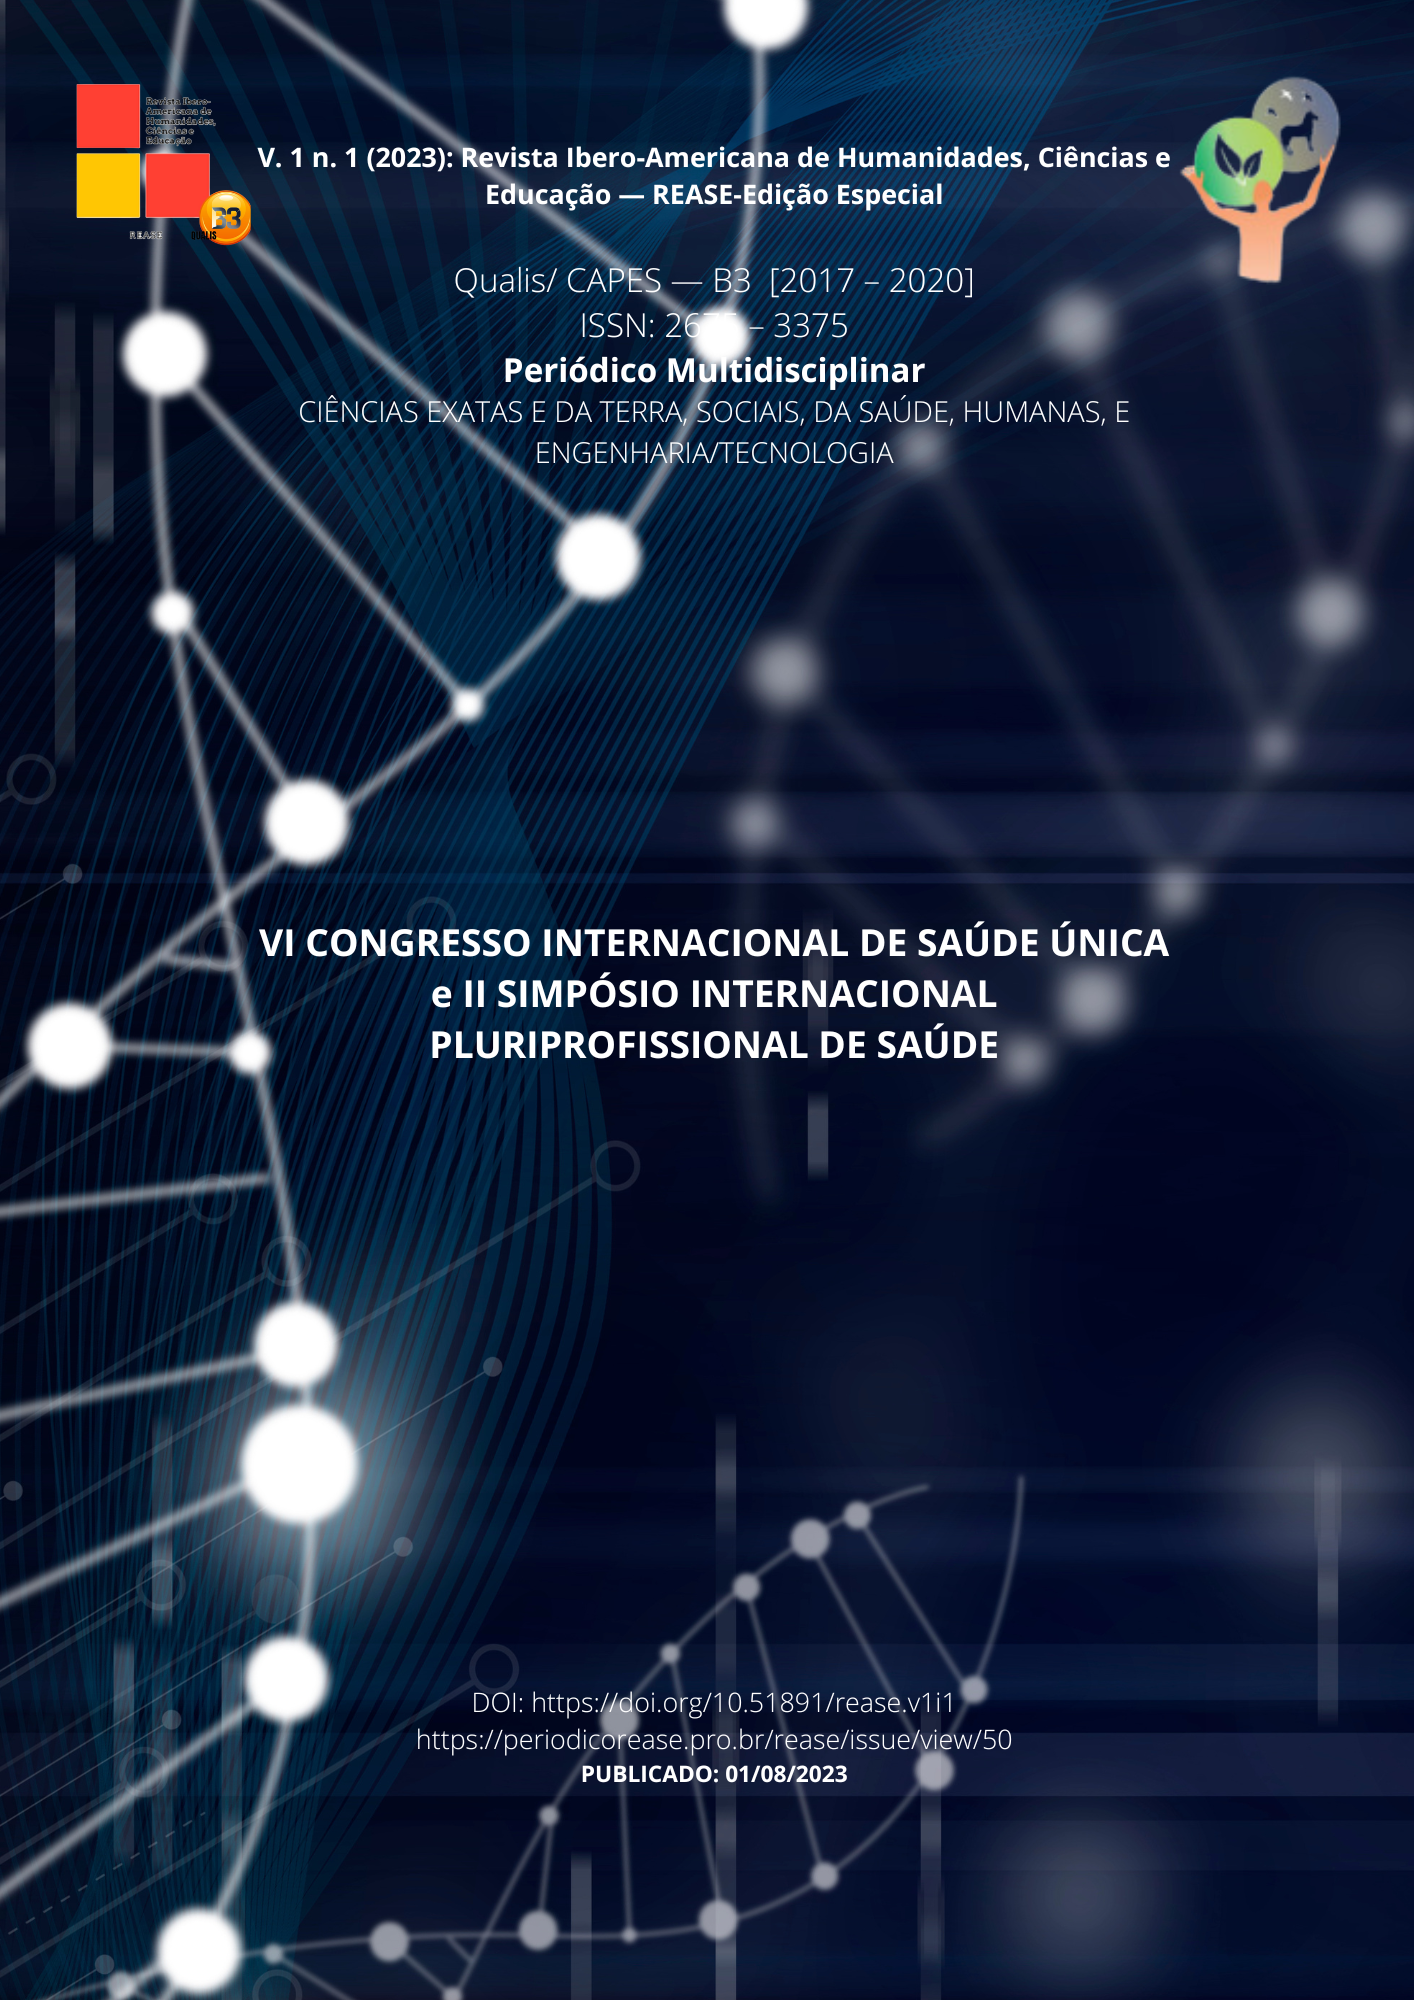 					Visualizar v. 1 (2023): Revista Ibero-Americana de Humanidades, Ciências e Educação- REASE - Edição Especial
				